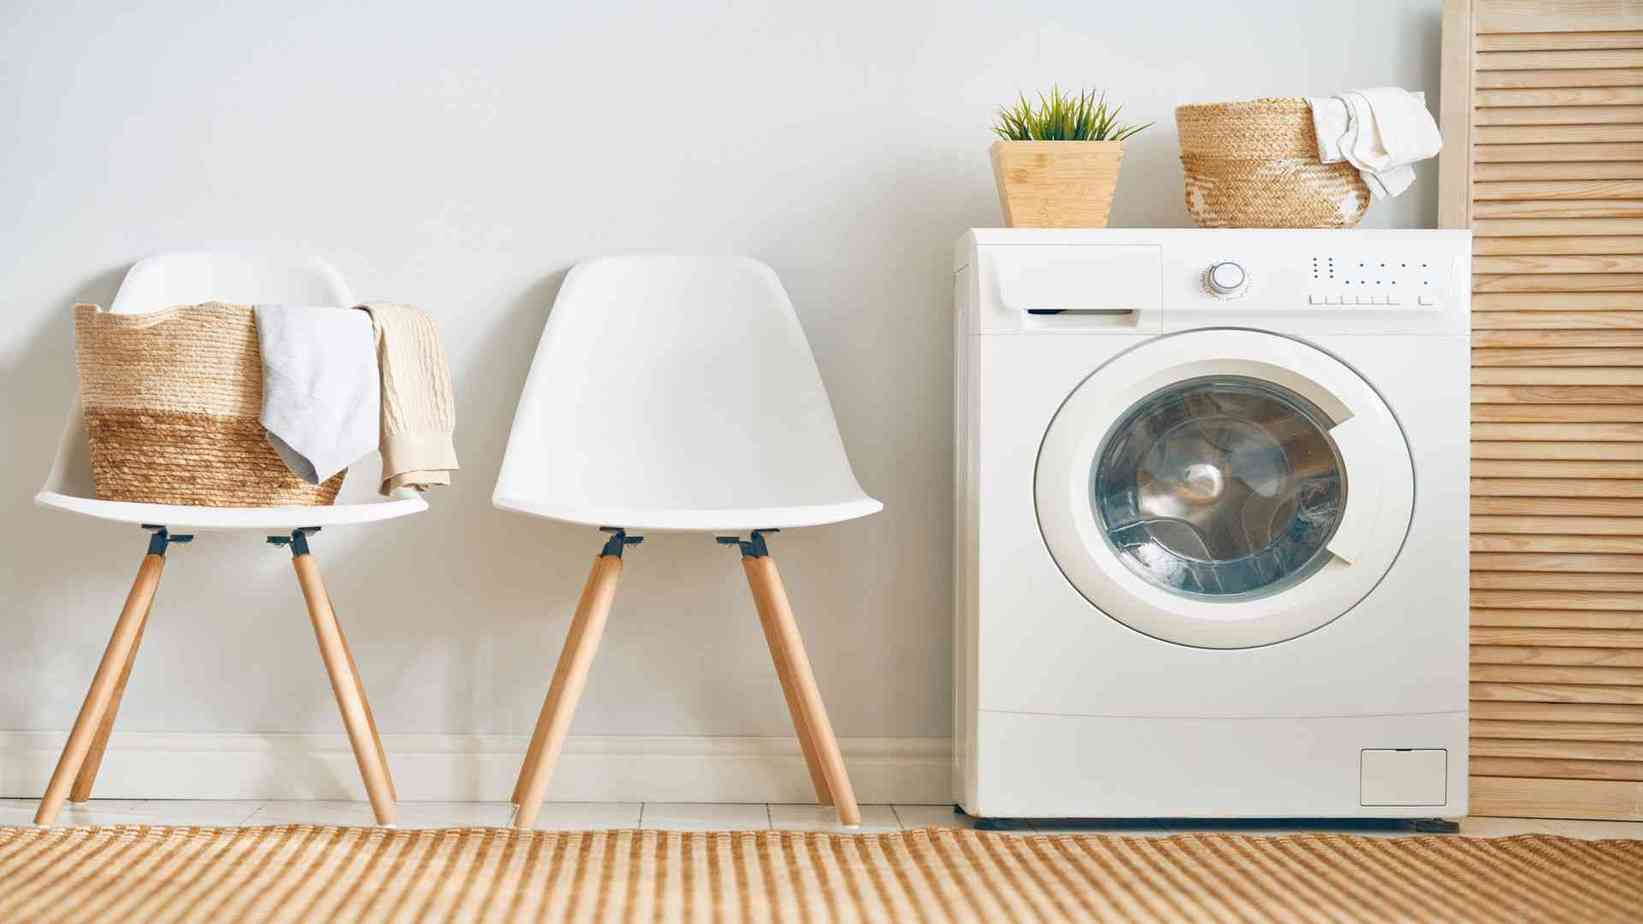 Best Washing Machine Brands in India